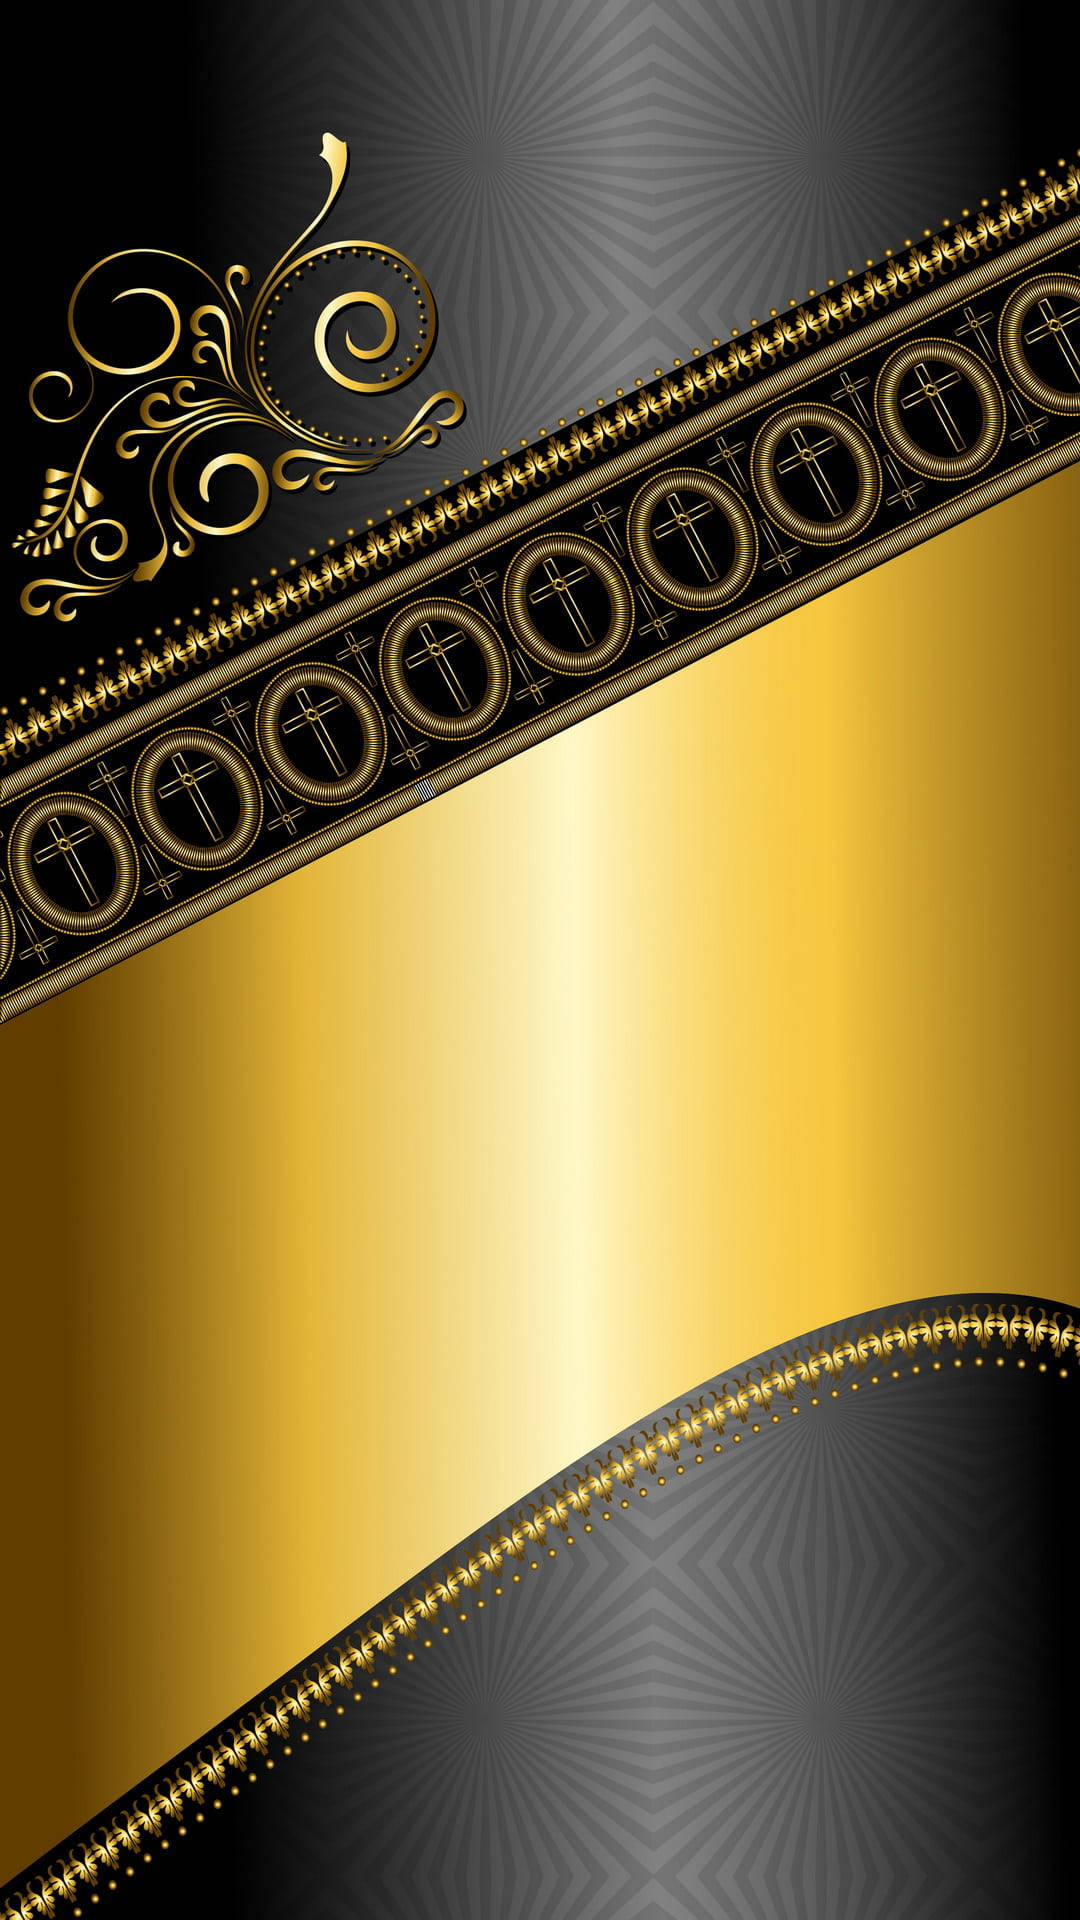 Aufwändigesschwarz-goldenes Iphone Wallpaper